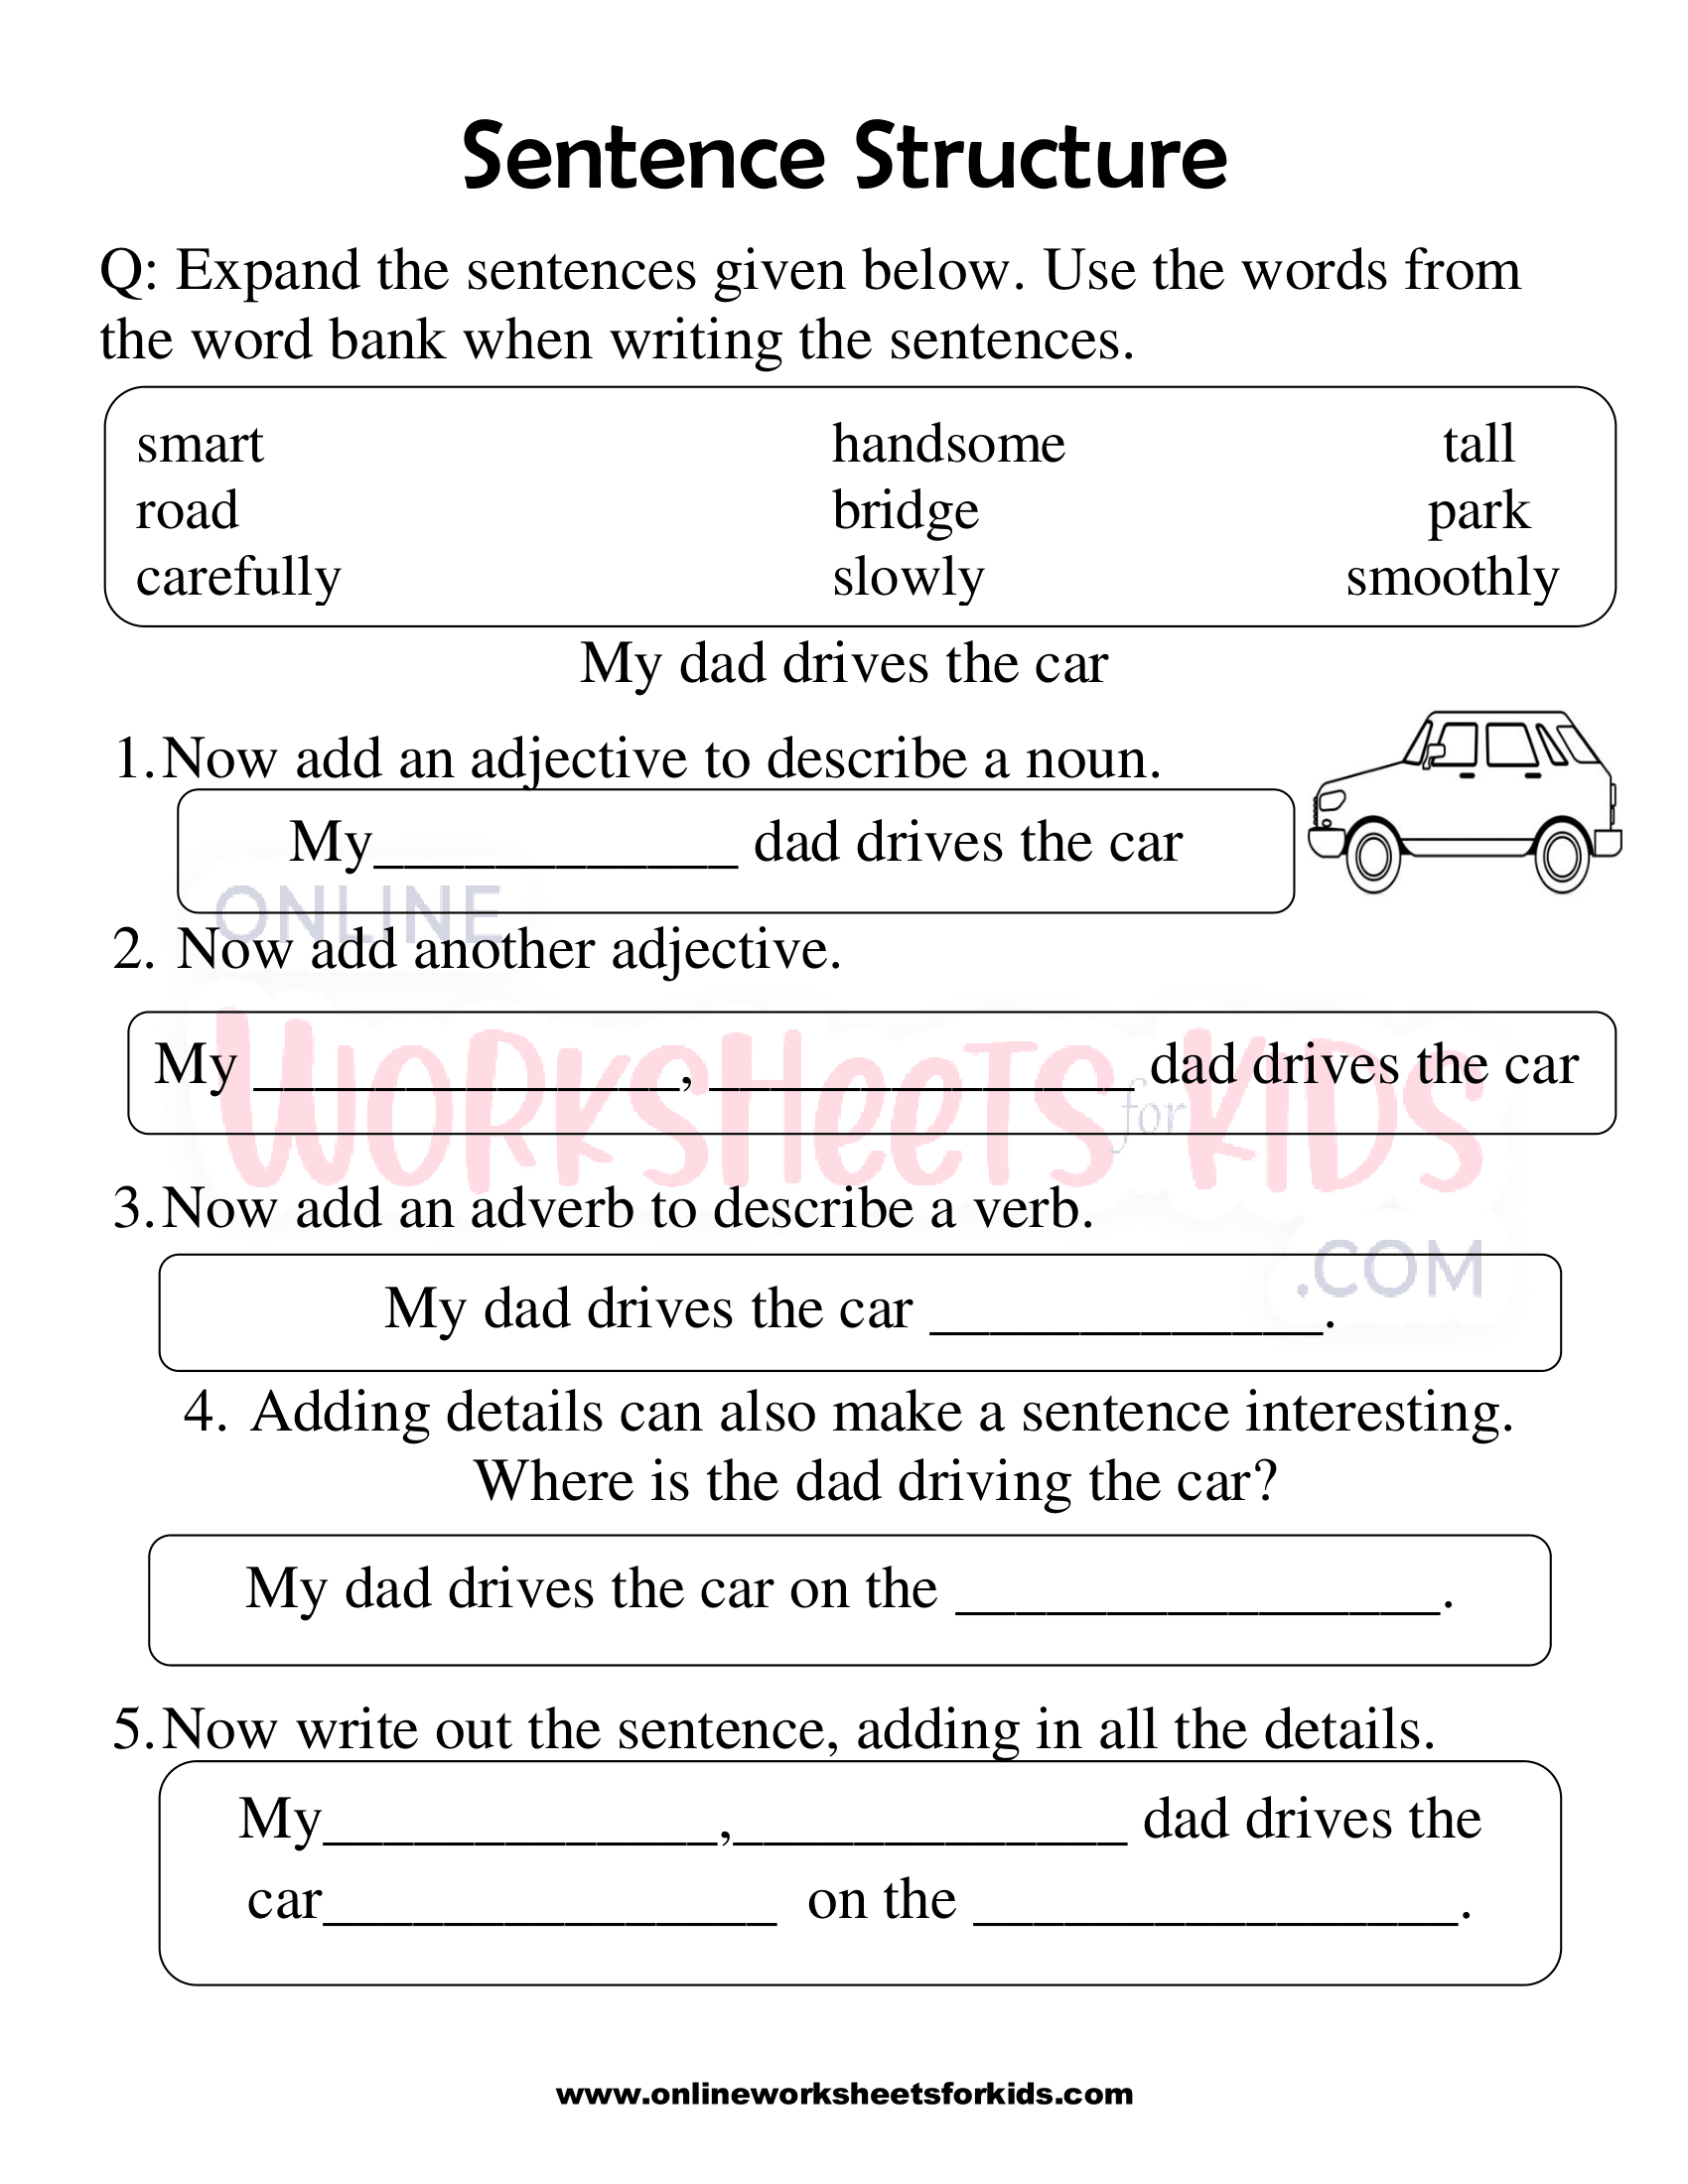 sentence-structure-worksheets-1st-grade-5